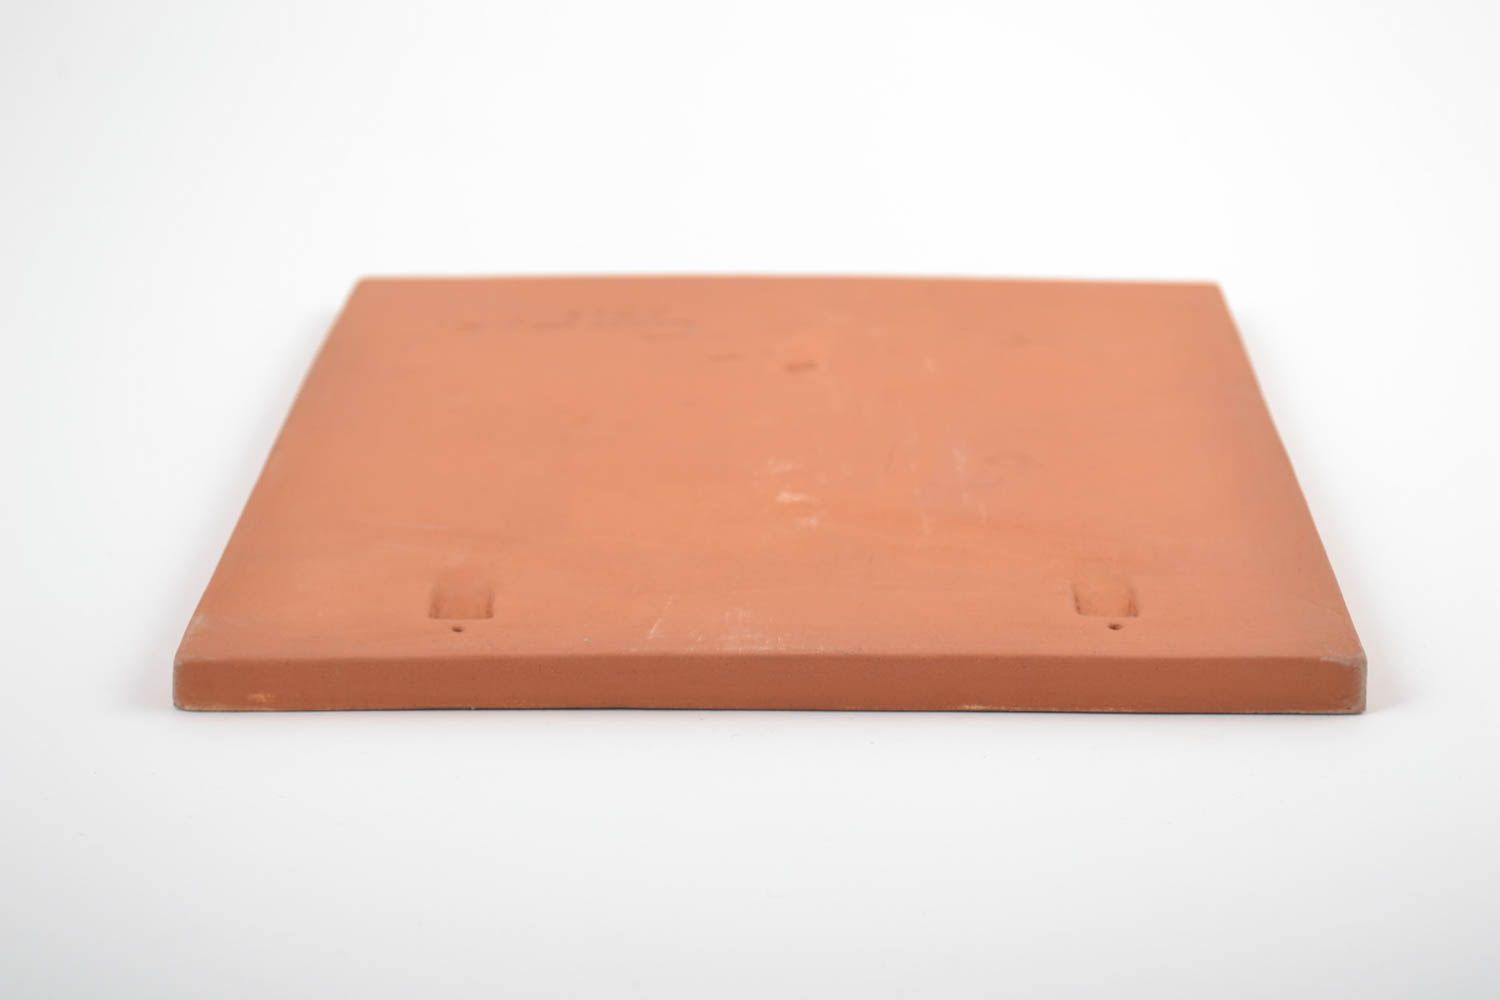 Облицовочная плитка с образом из глины ручной работы расписная необычная для декора фото 5